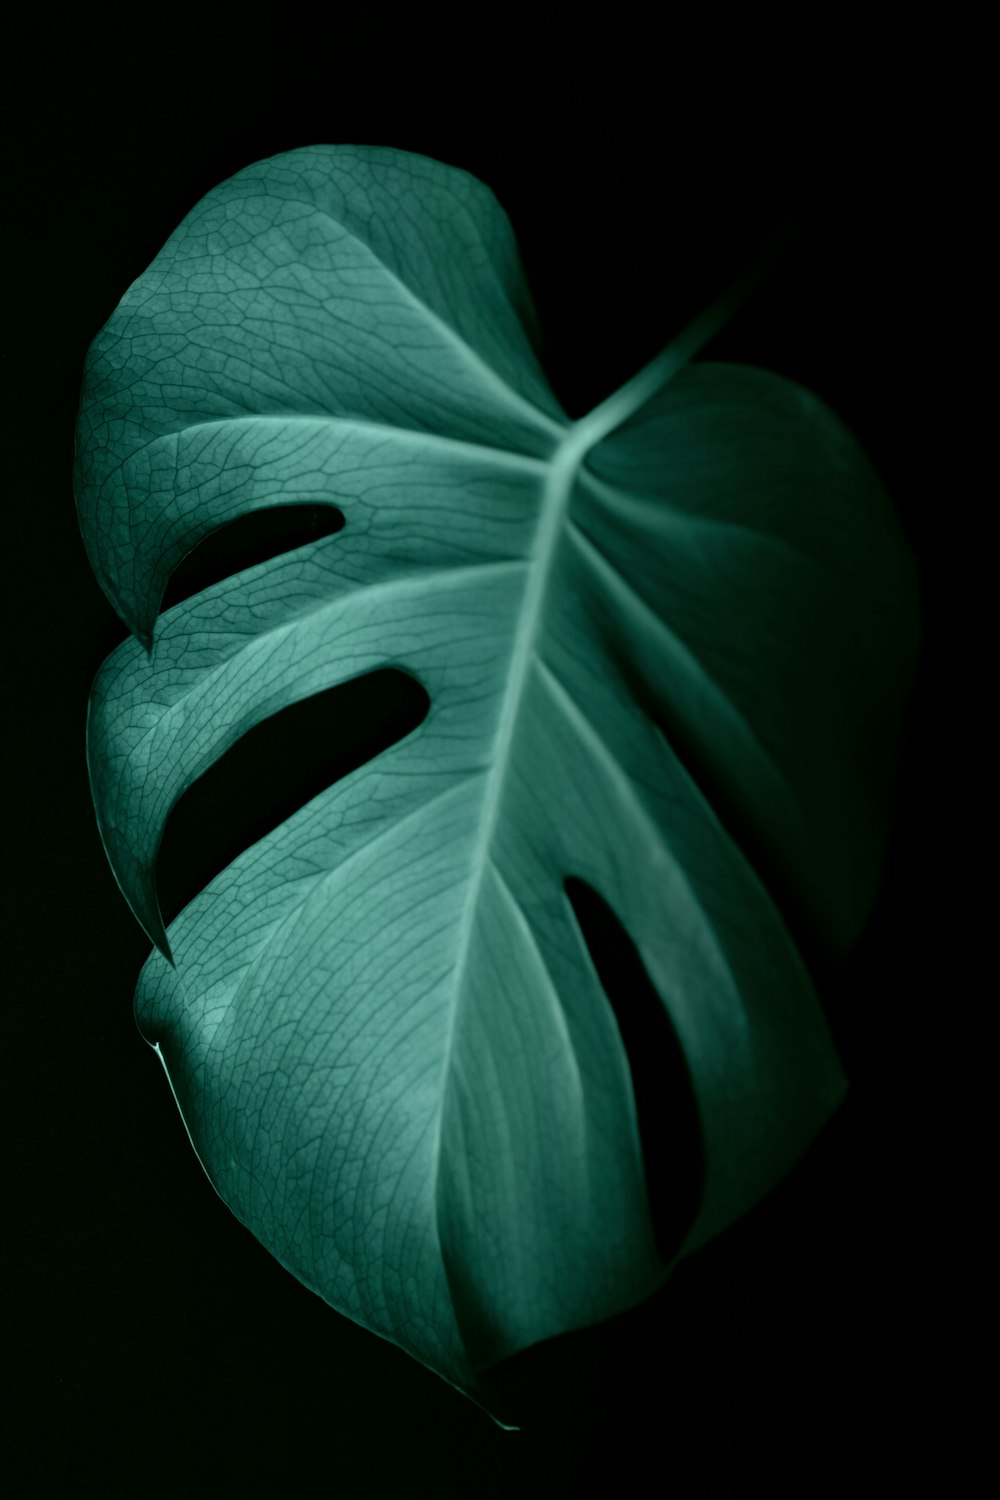 어두운 표면의 녹색 잎